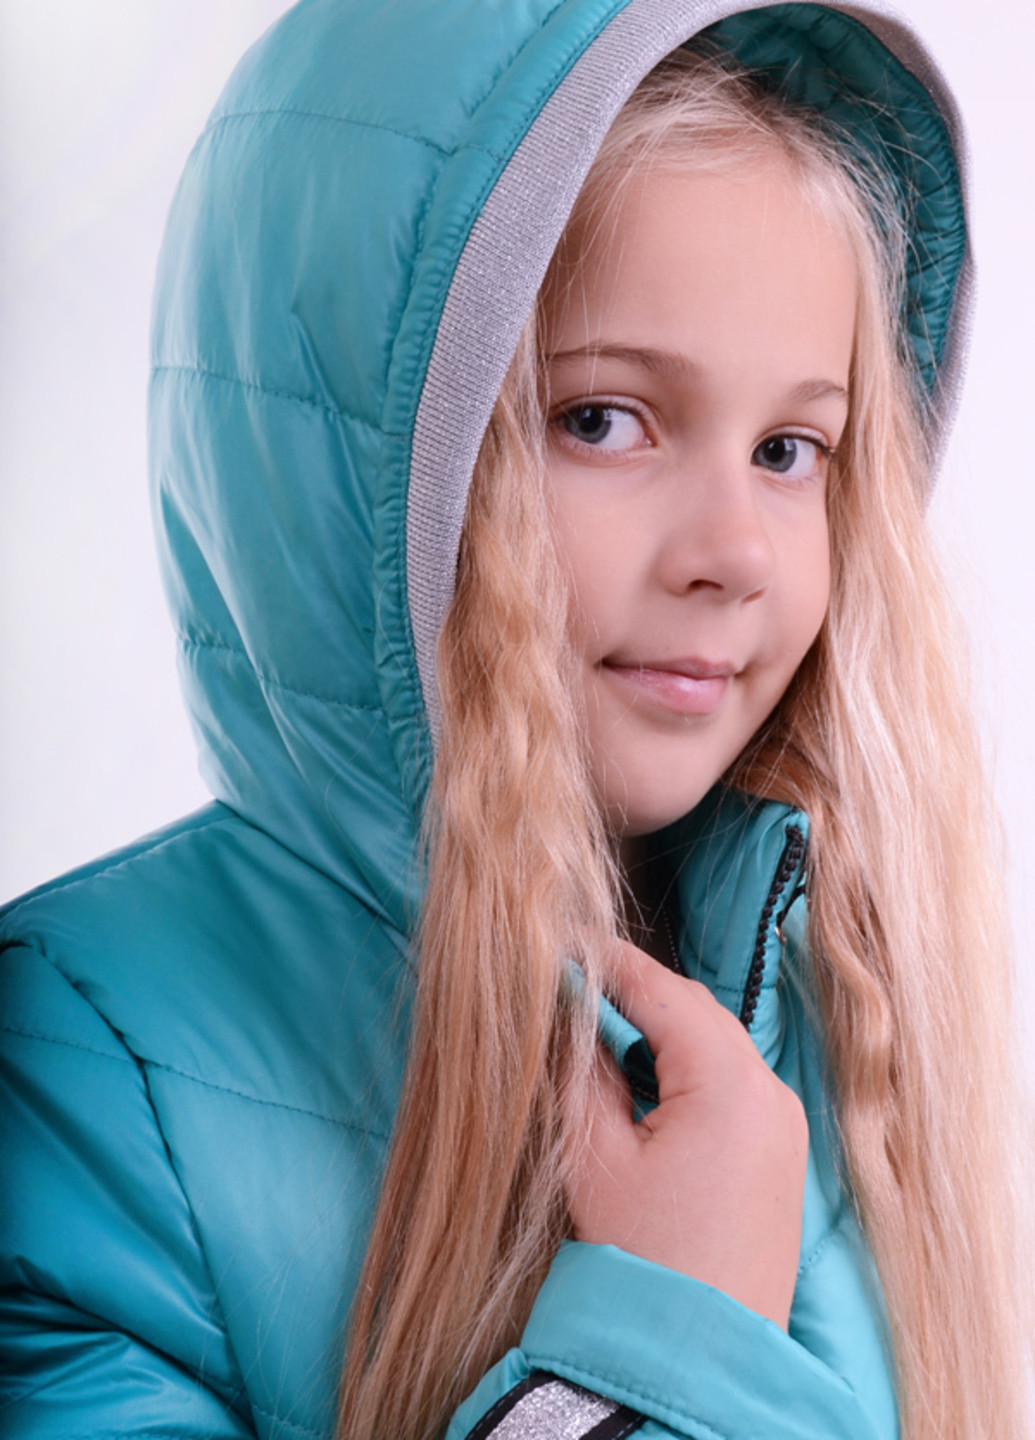 Бірюзова зимня зимова подовжена куртка k41 Luxik удлиненная куртка